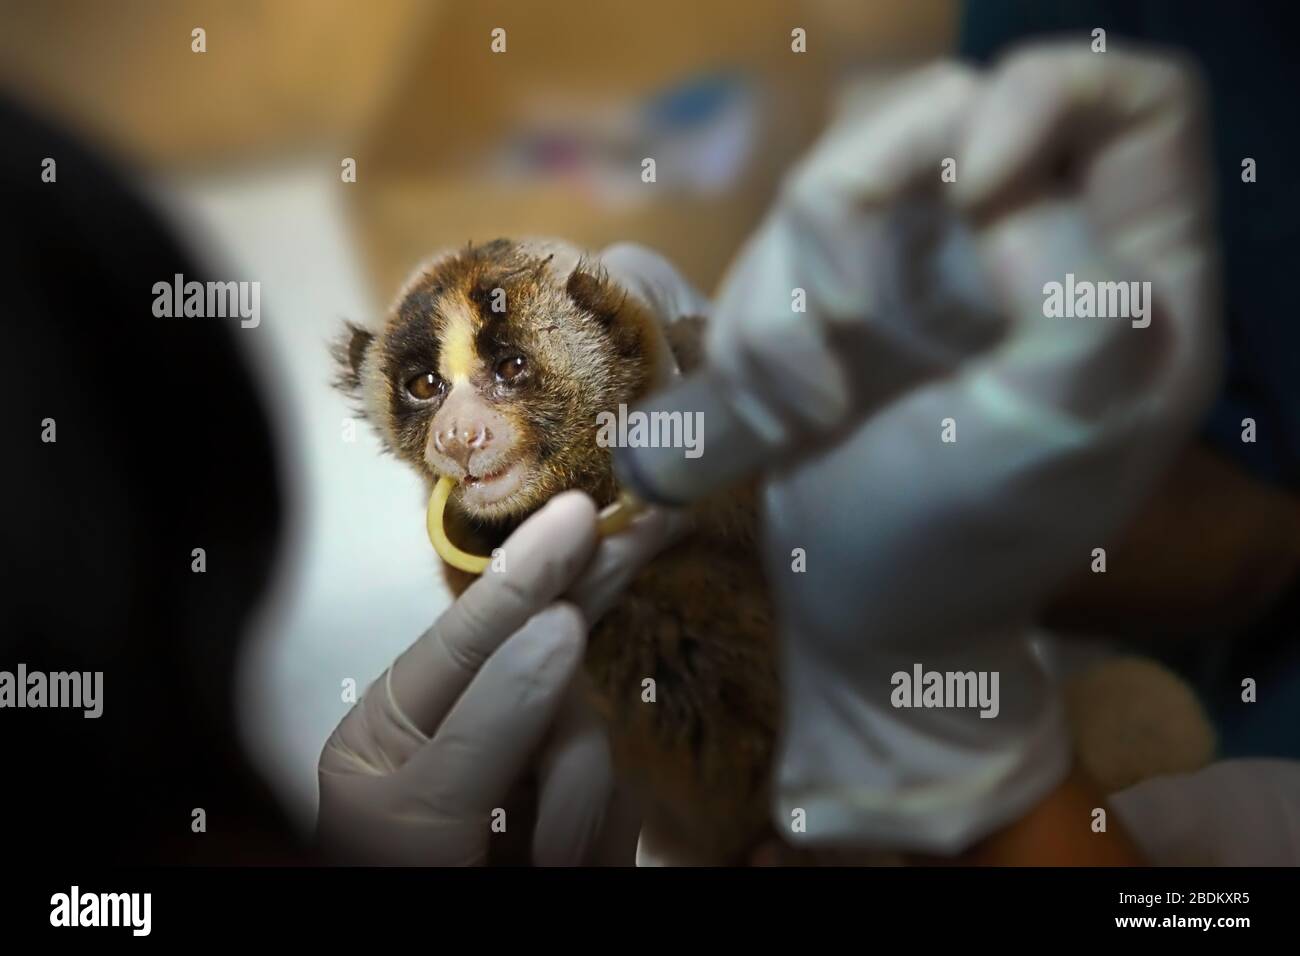 A Slow loris viene dato un trattamento medico in un centro di riabilitazione animale gestito da International Animal Rescue (IAR) in Indonesia. Foto Stock